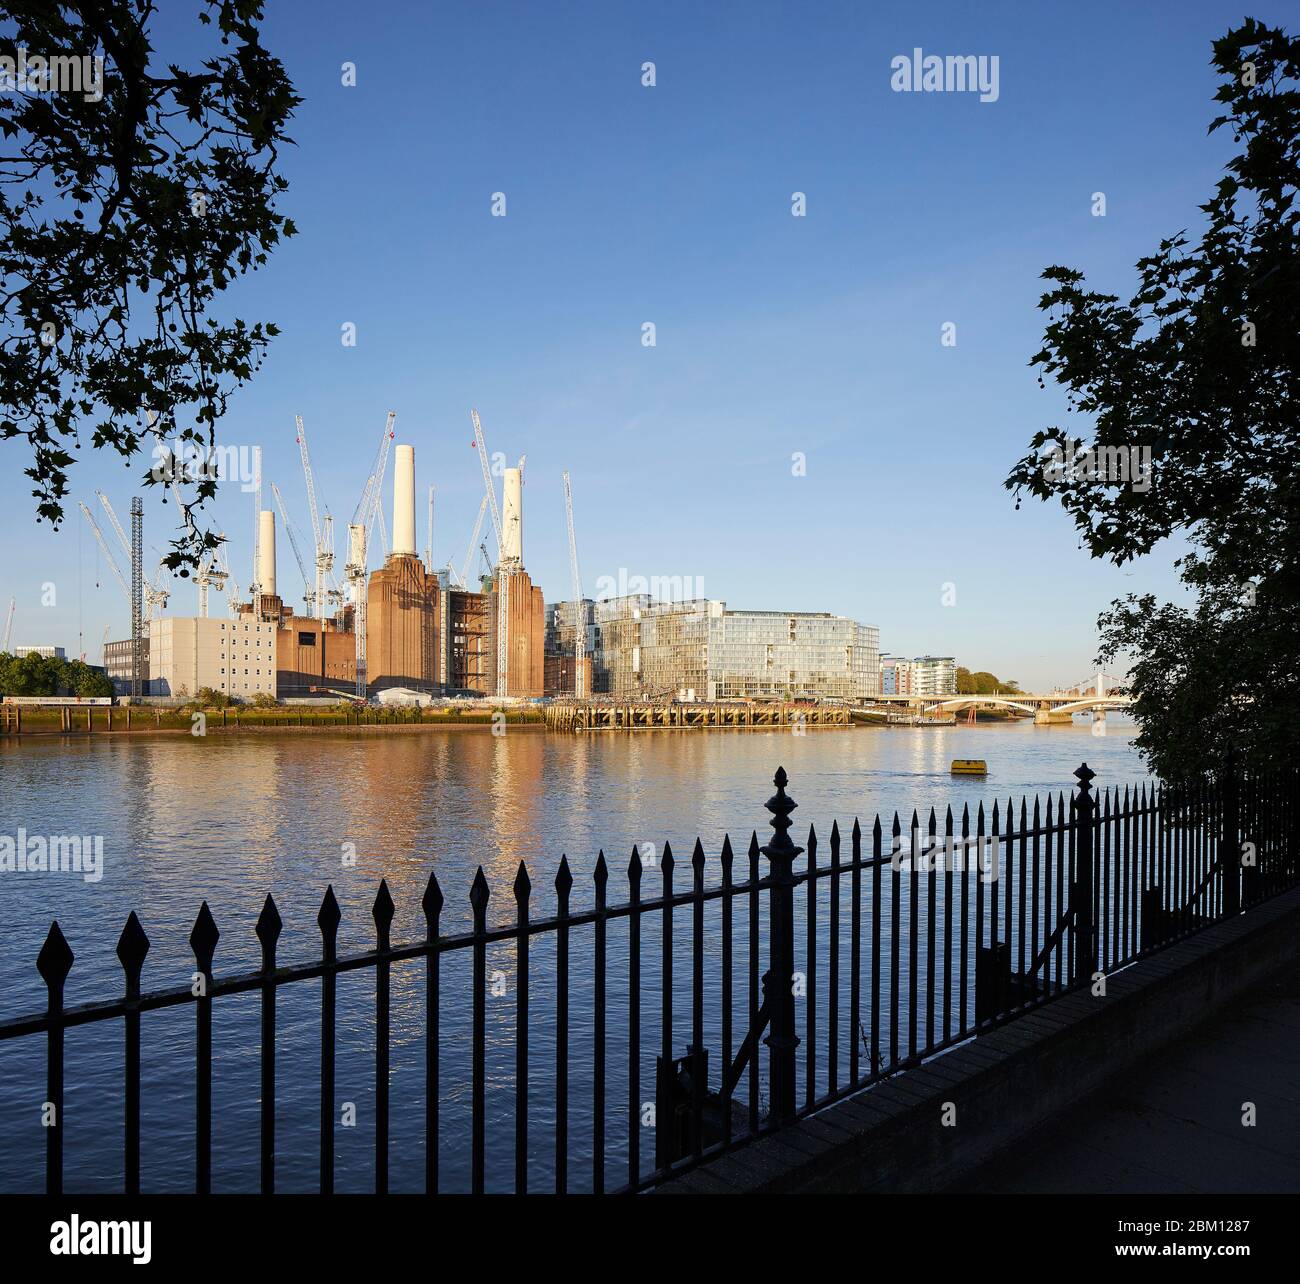 Vue extérieure de l'autre côté de la Tamise. Circus West Village - Battersea Power Station, Londres, Royaume-Uni. Architecte: Simpsonhaugh, 2018. Banque D'Images